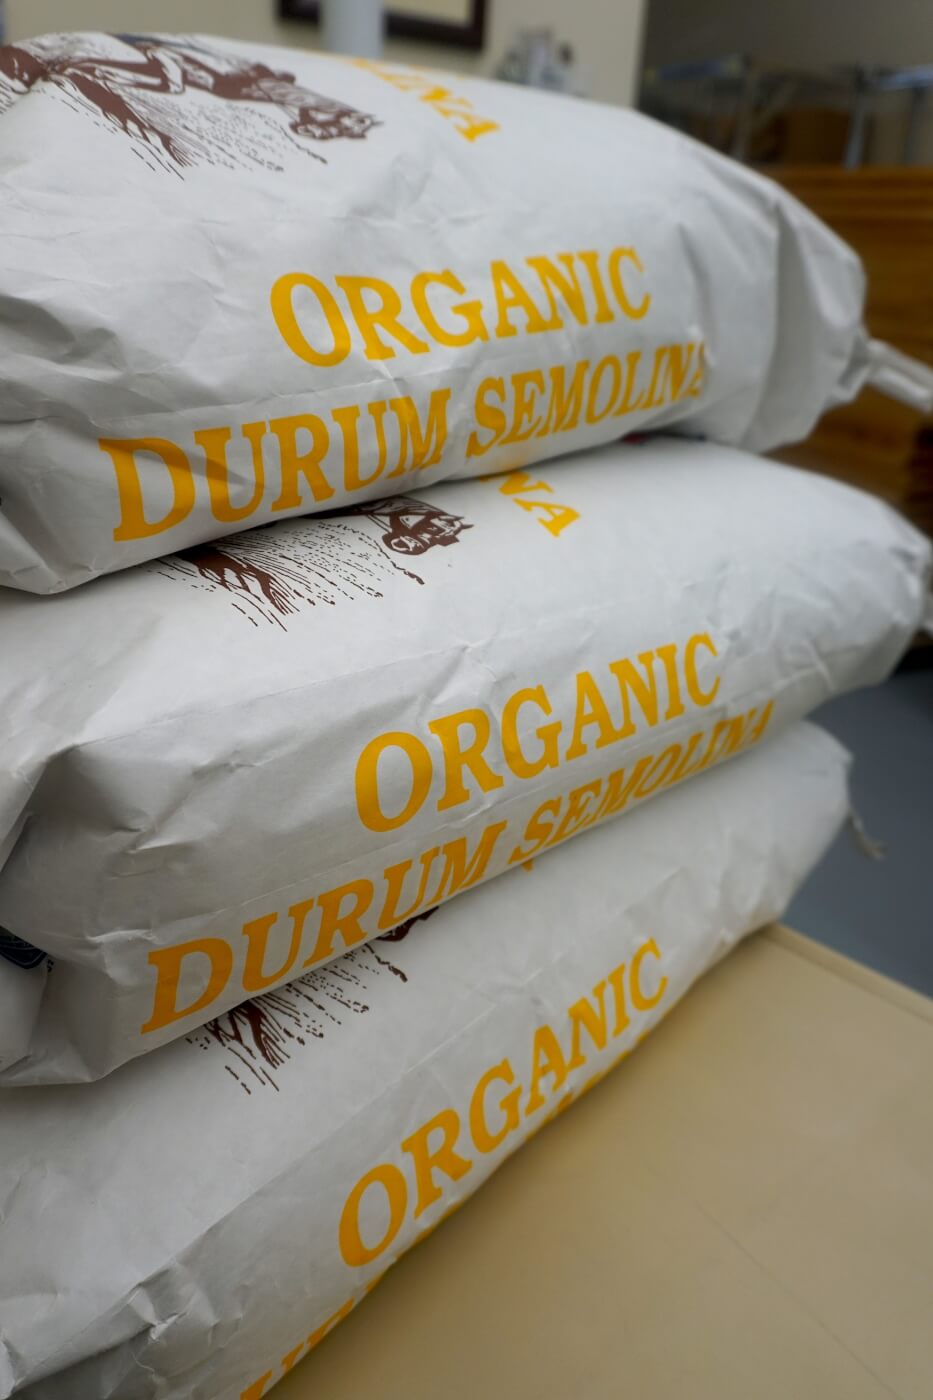 Bags of organic durum semolina